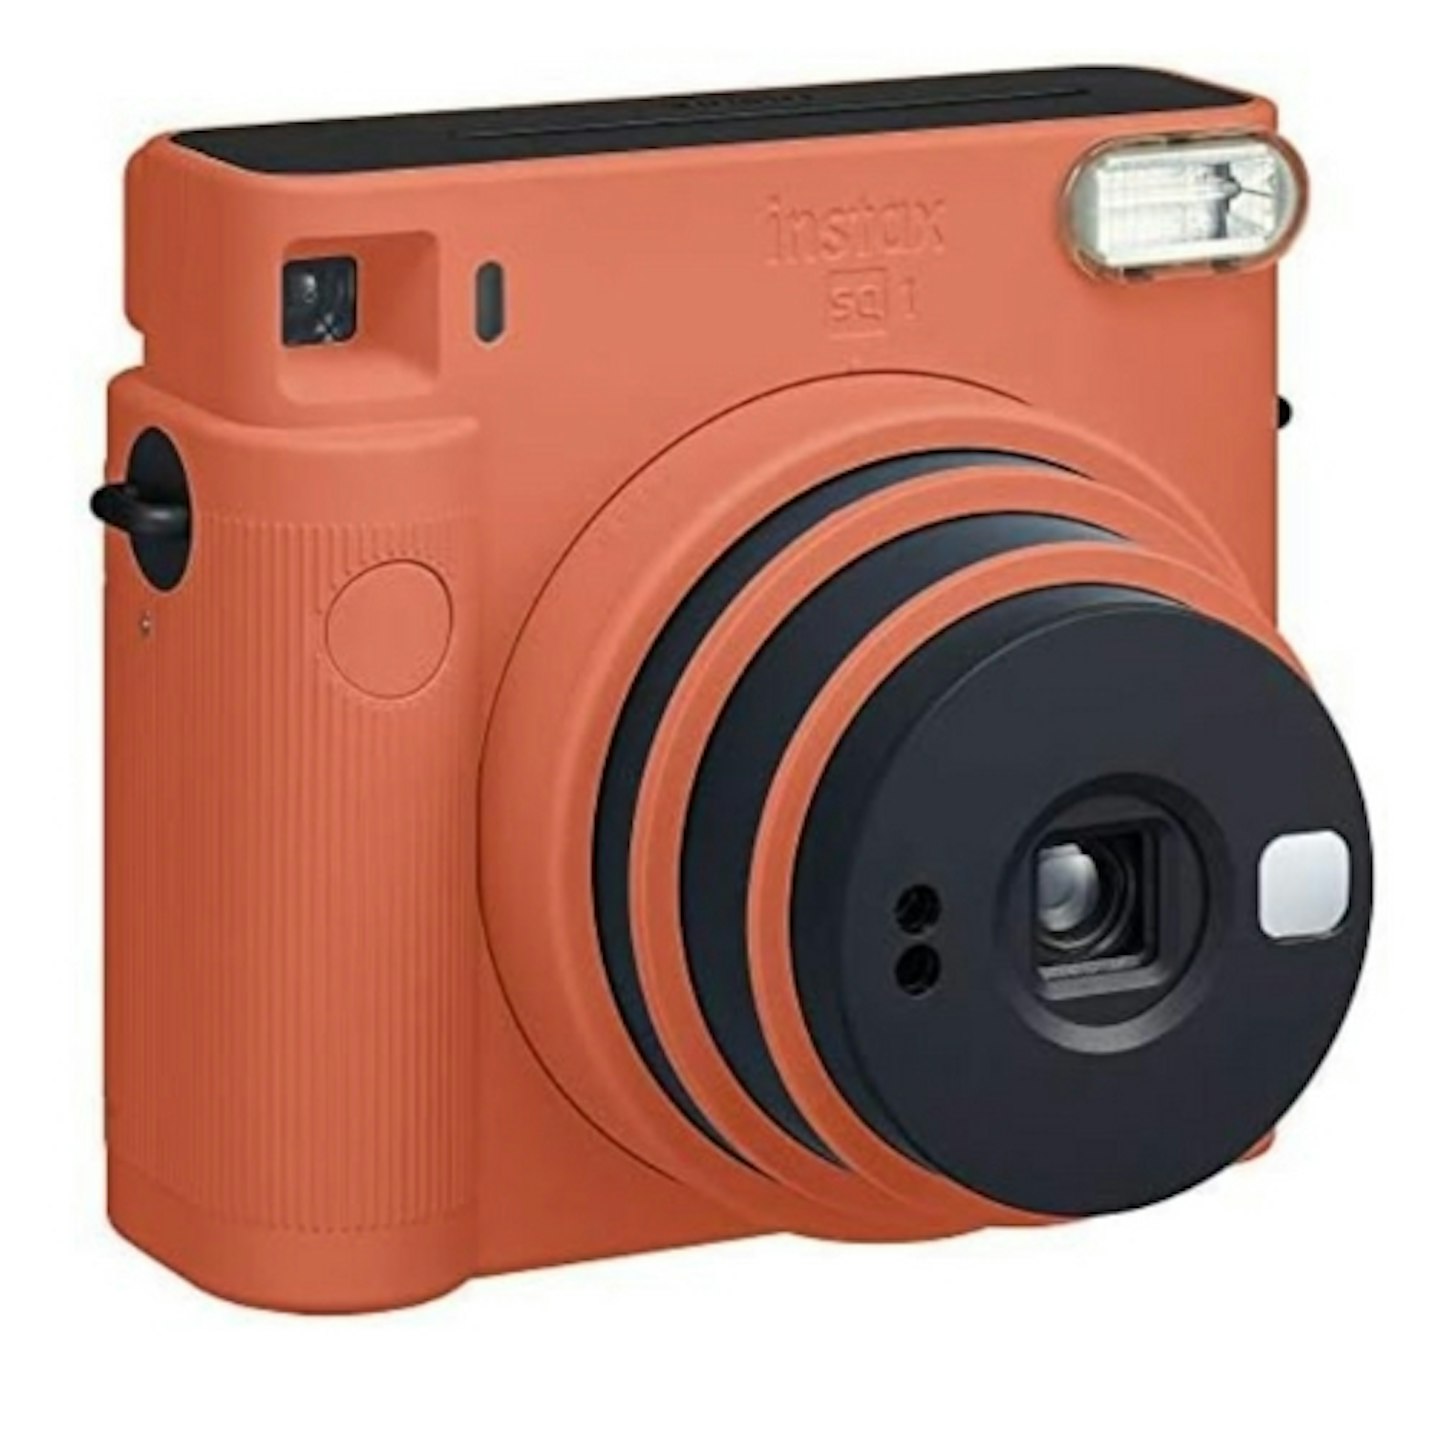 Instax SQUARE SQ1 Instant Film Camera